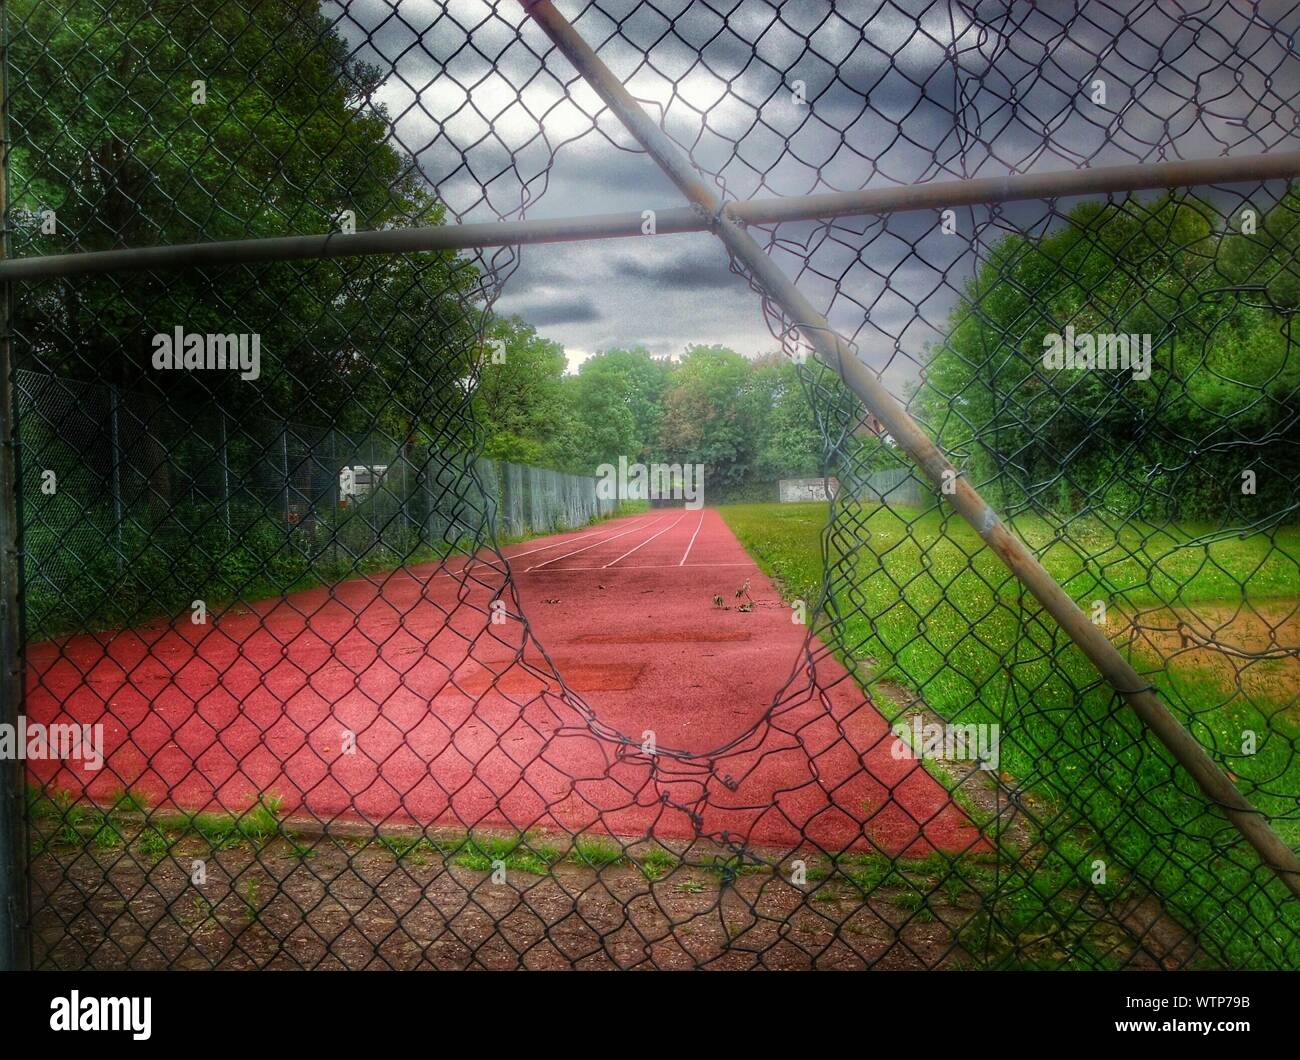 Sportplatz mit Zaun im Vordergrund Stockfoto